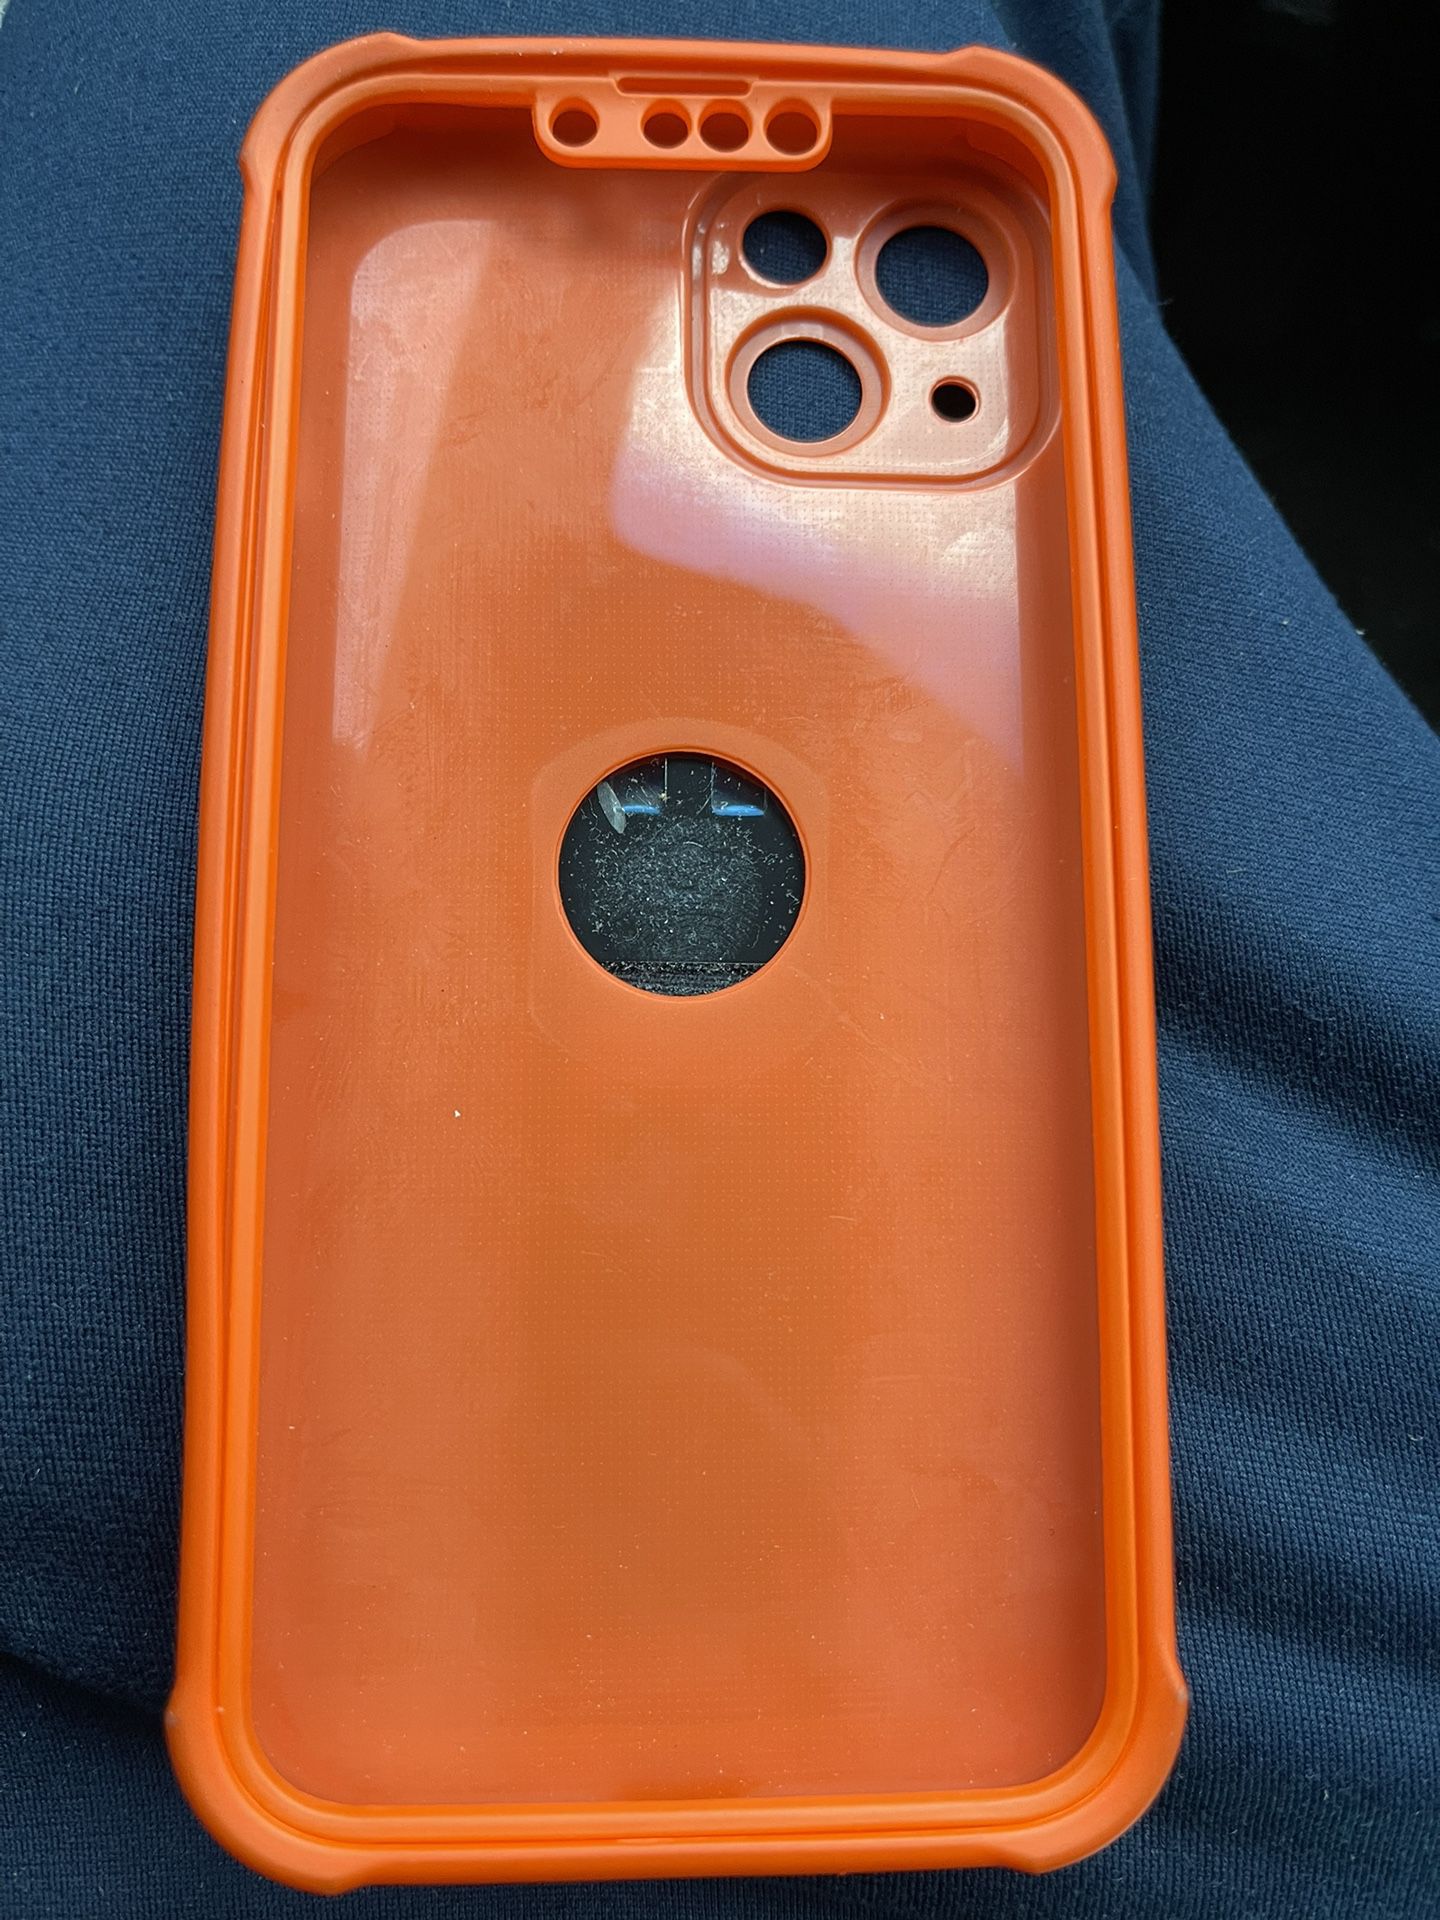 iphone Case